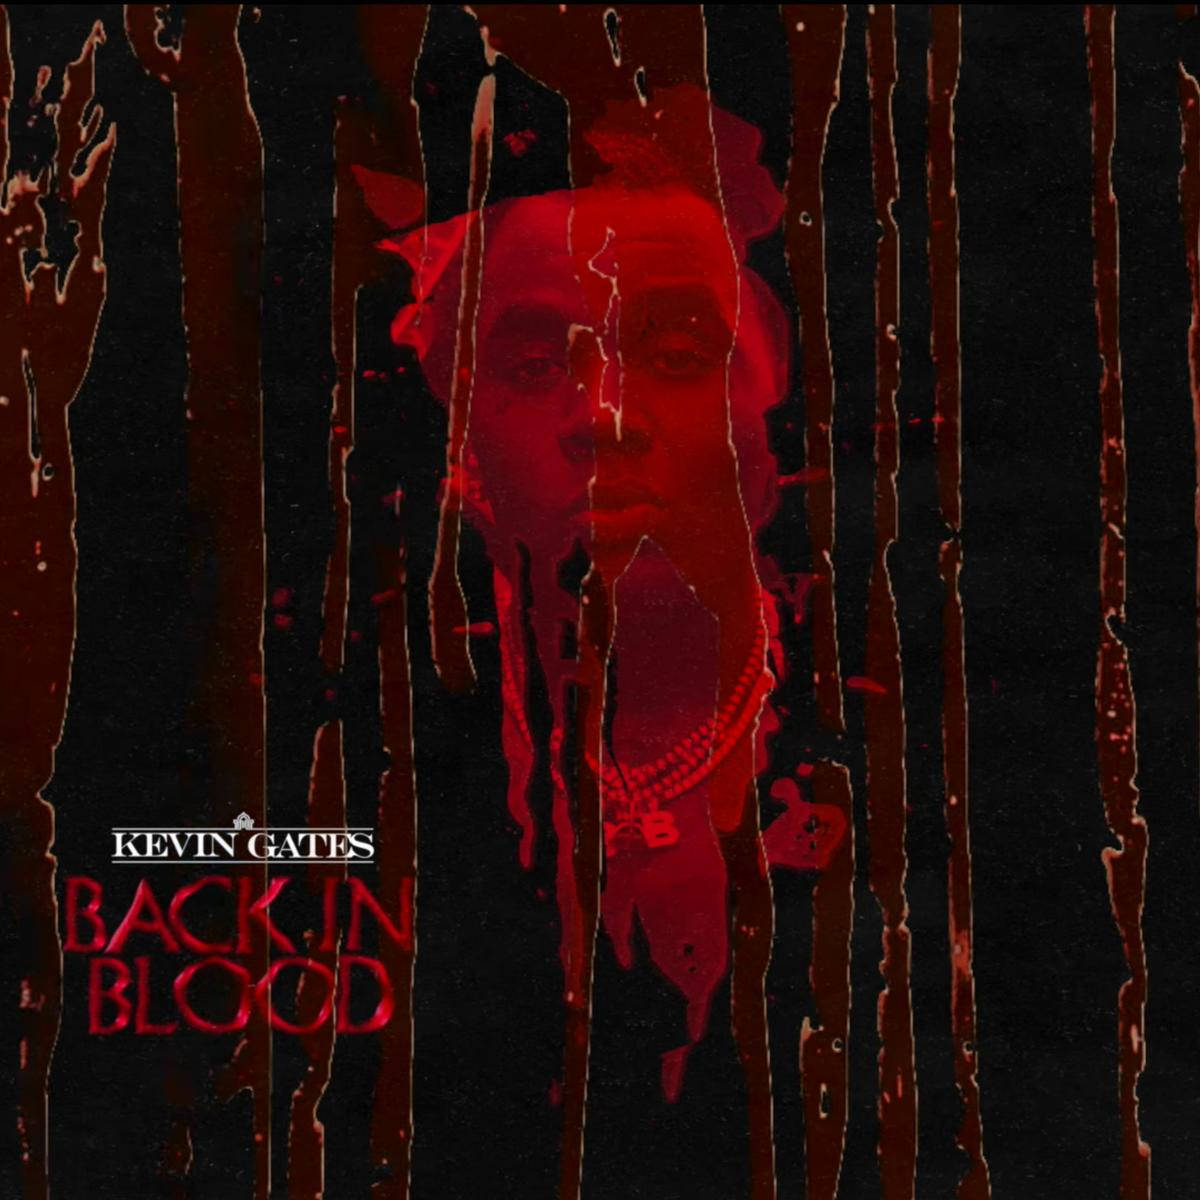 Kevin Gates Back In Blood Art Wallpaper